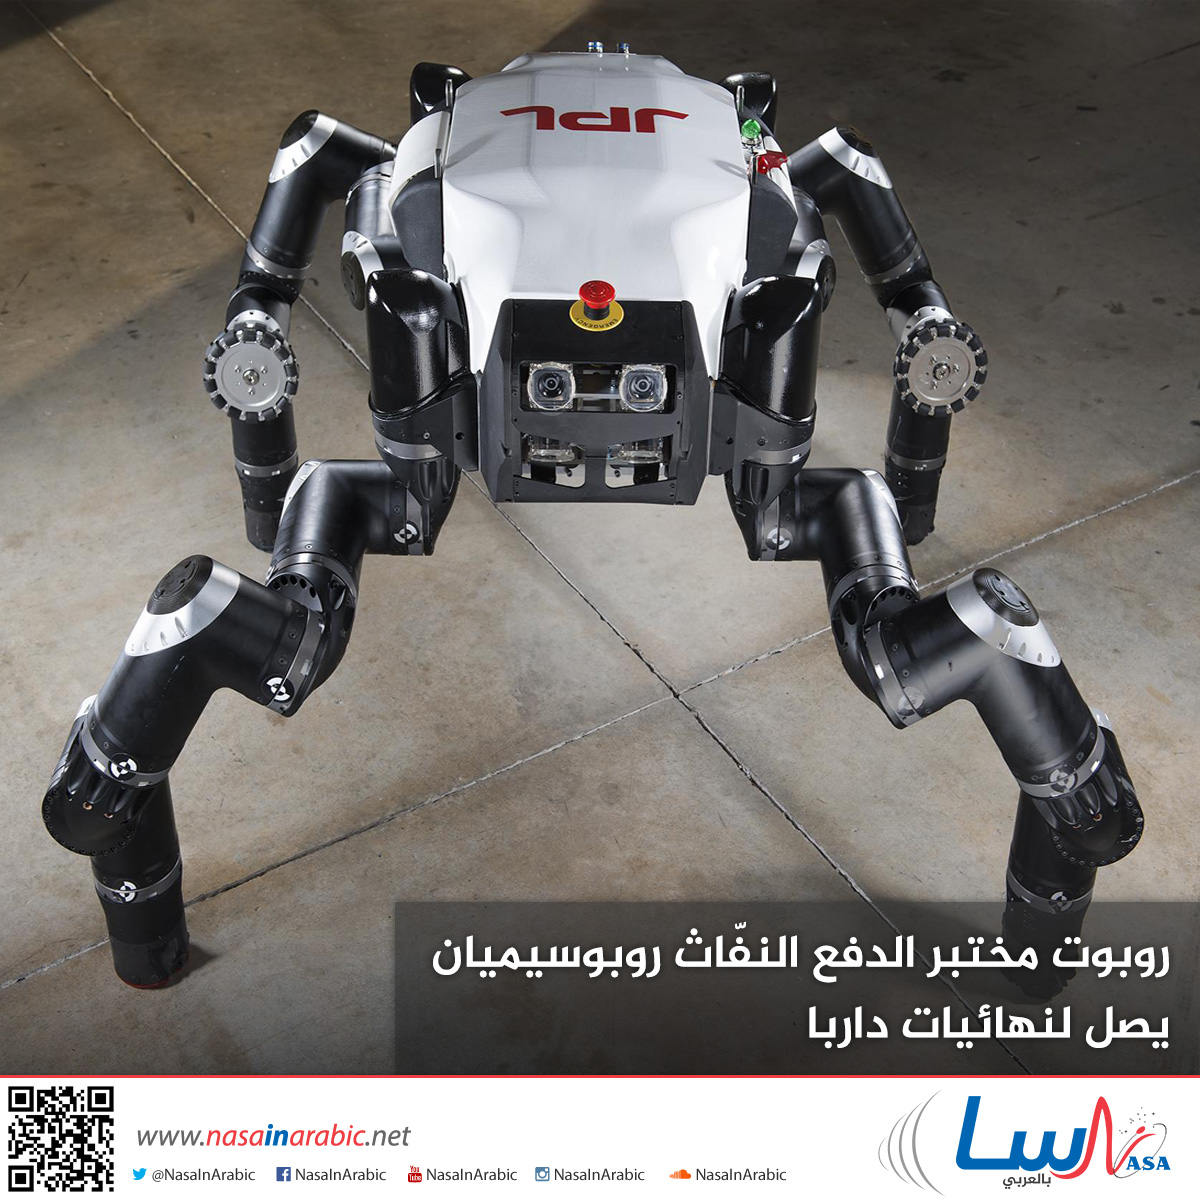 روبوت مختبر الدفع النفّاث روبوسيميان يصل لنهائيات داربا